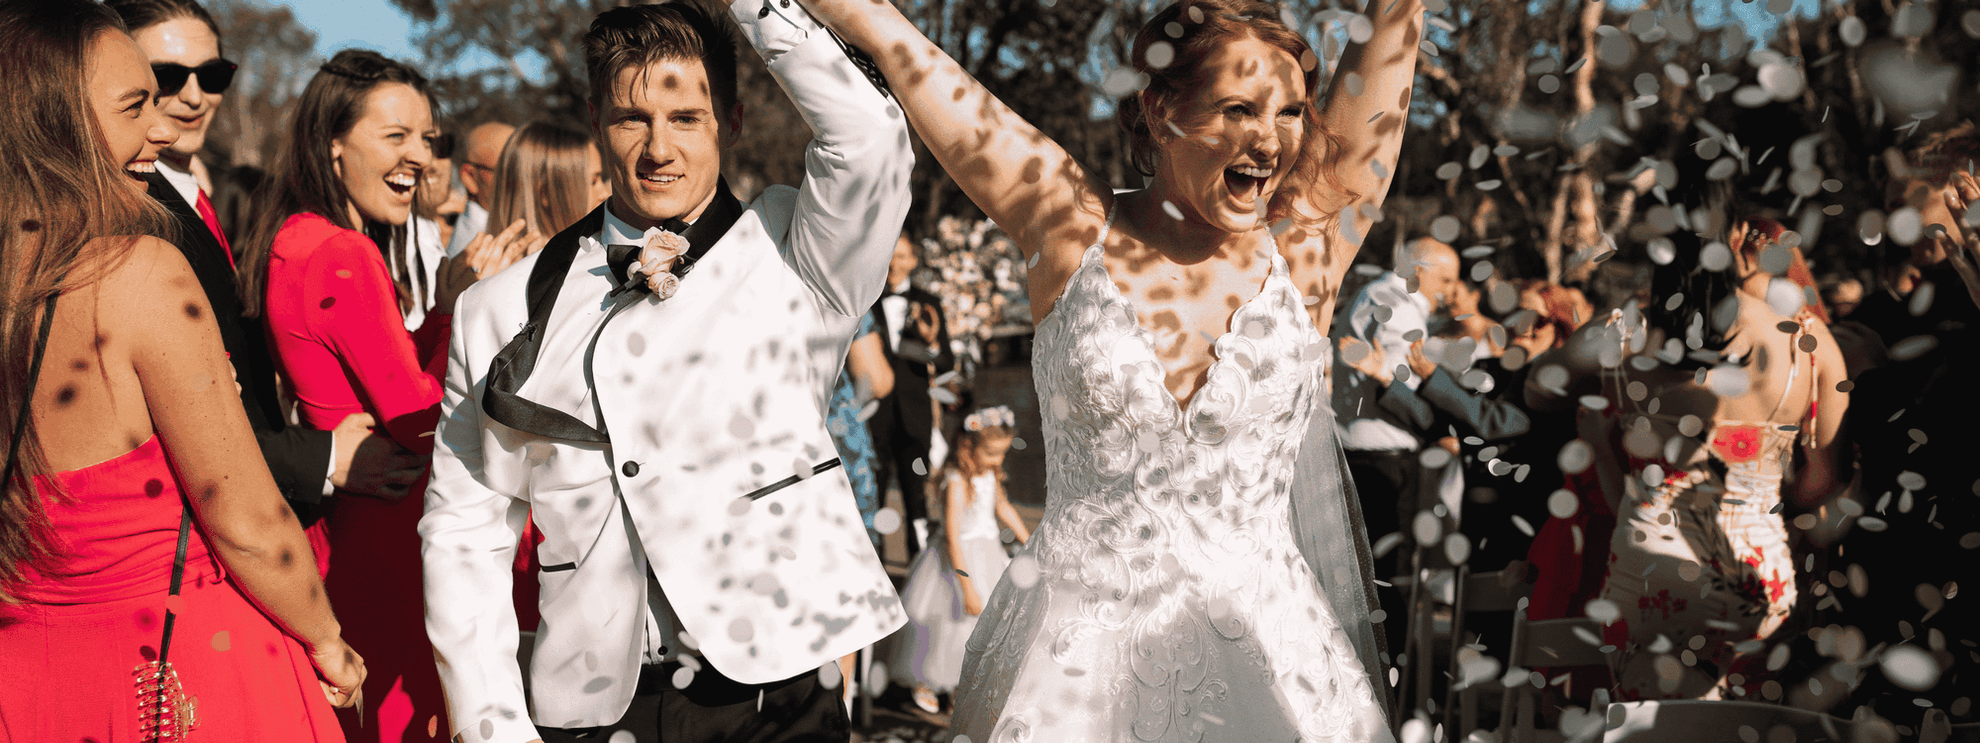 Newly weds celebrating their wedding at mercure kooindah waters resort